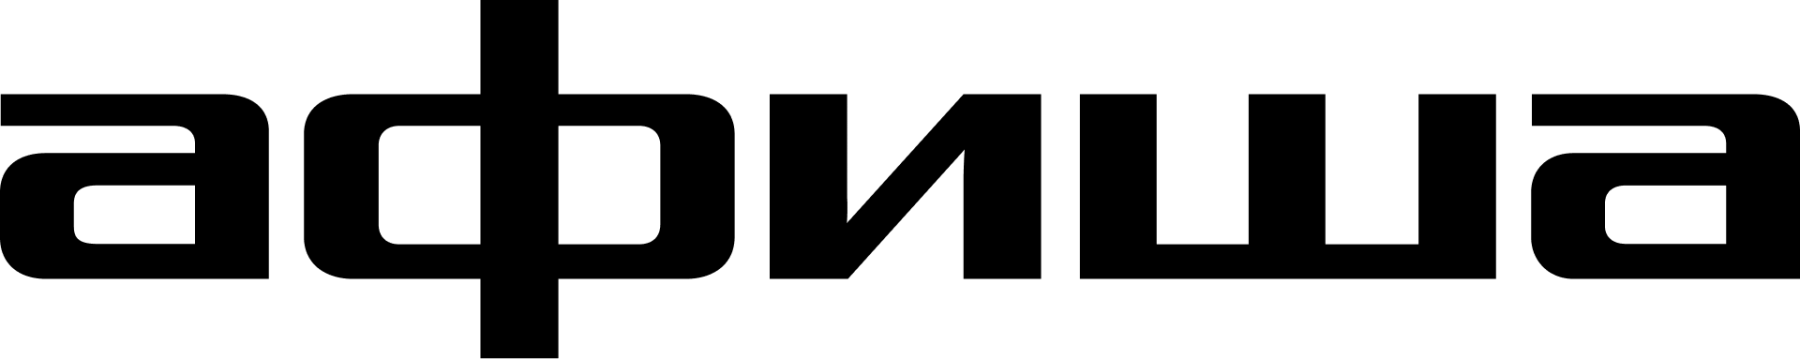 afisha-logo (1).png